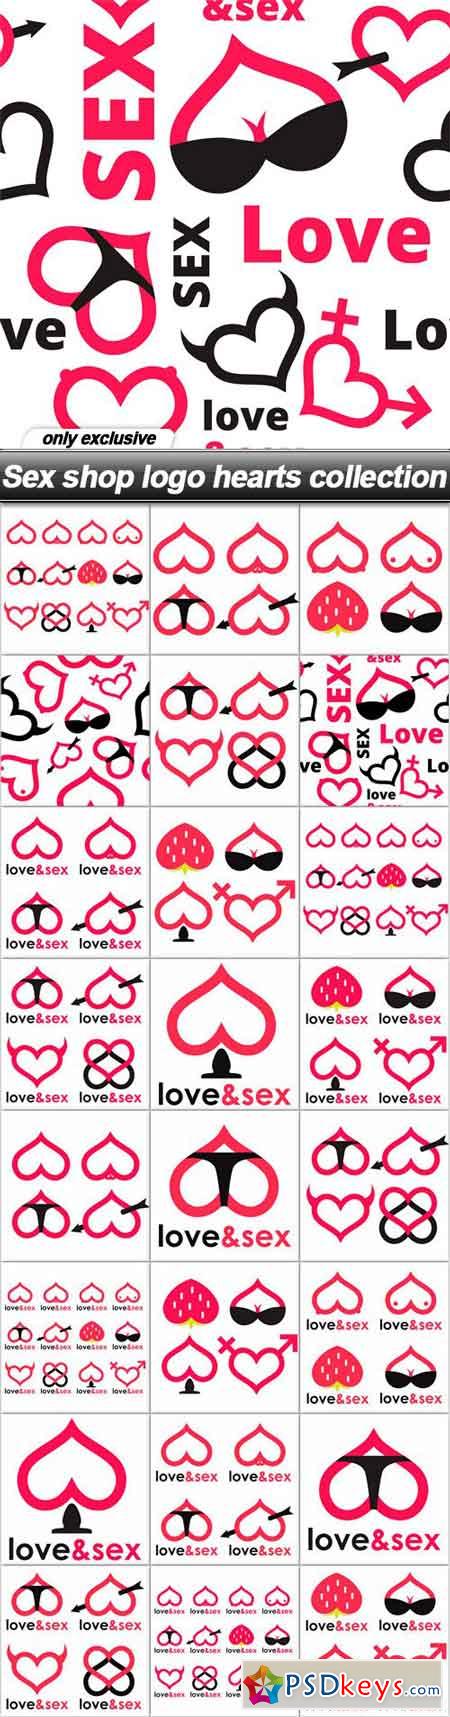 Sex shop logo hearts collection - 25 EPS